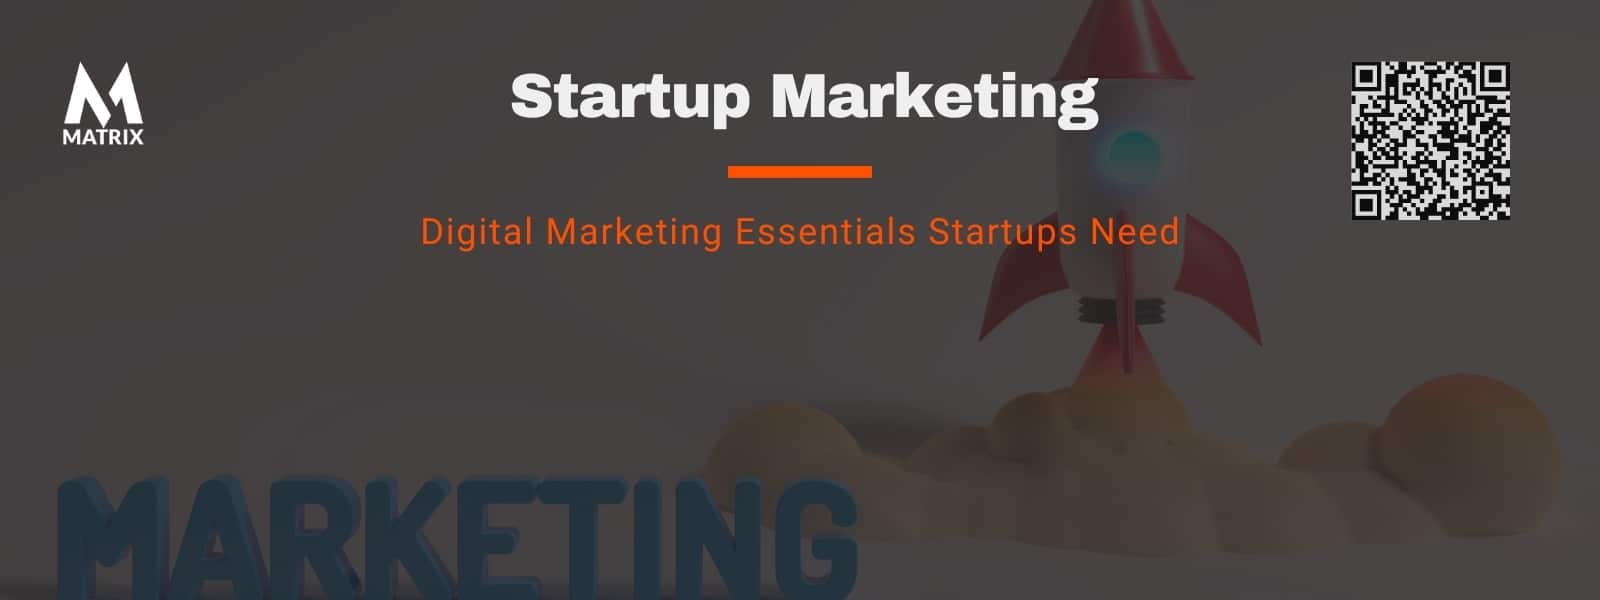 Digital Marketing Essentials Startups